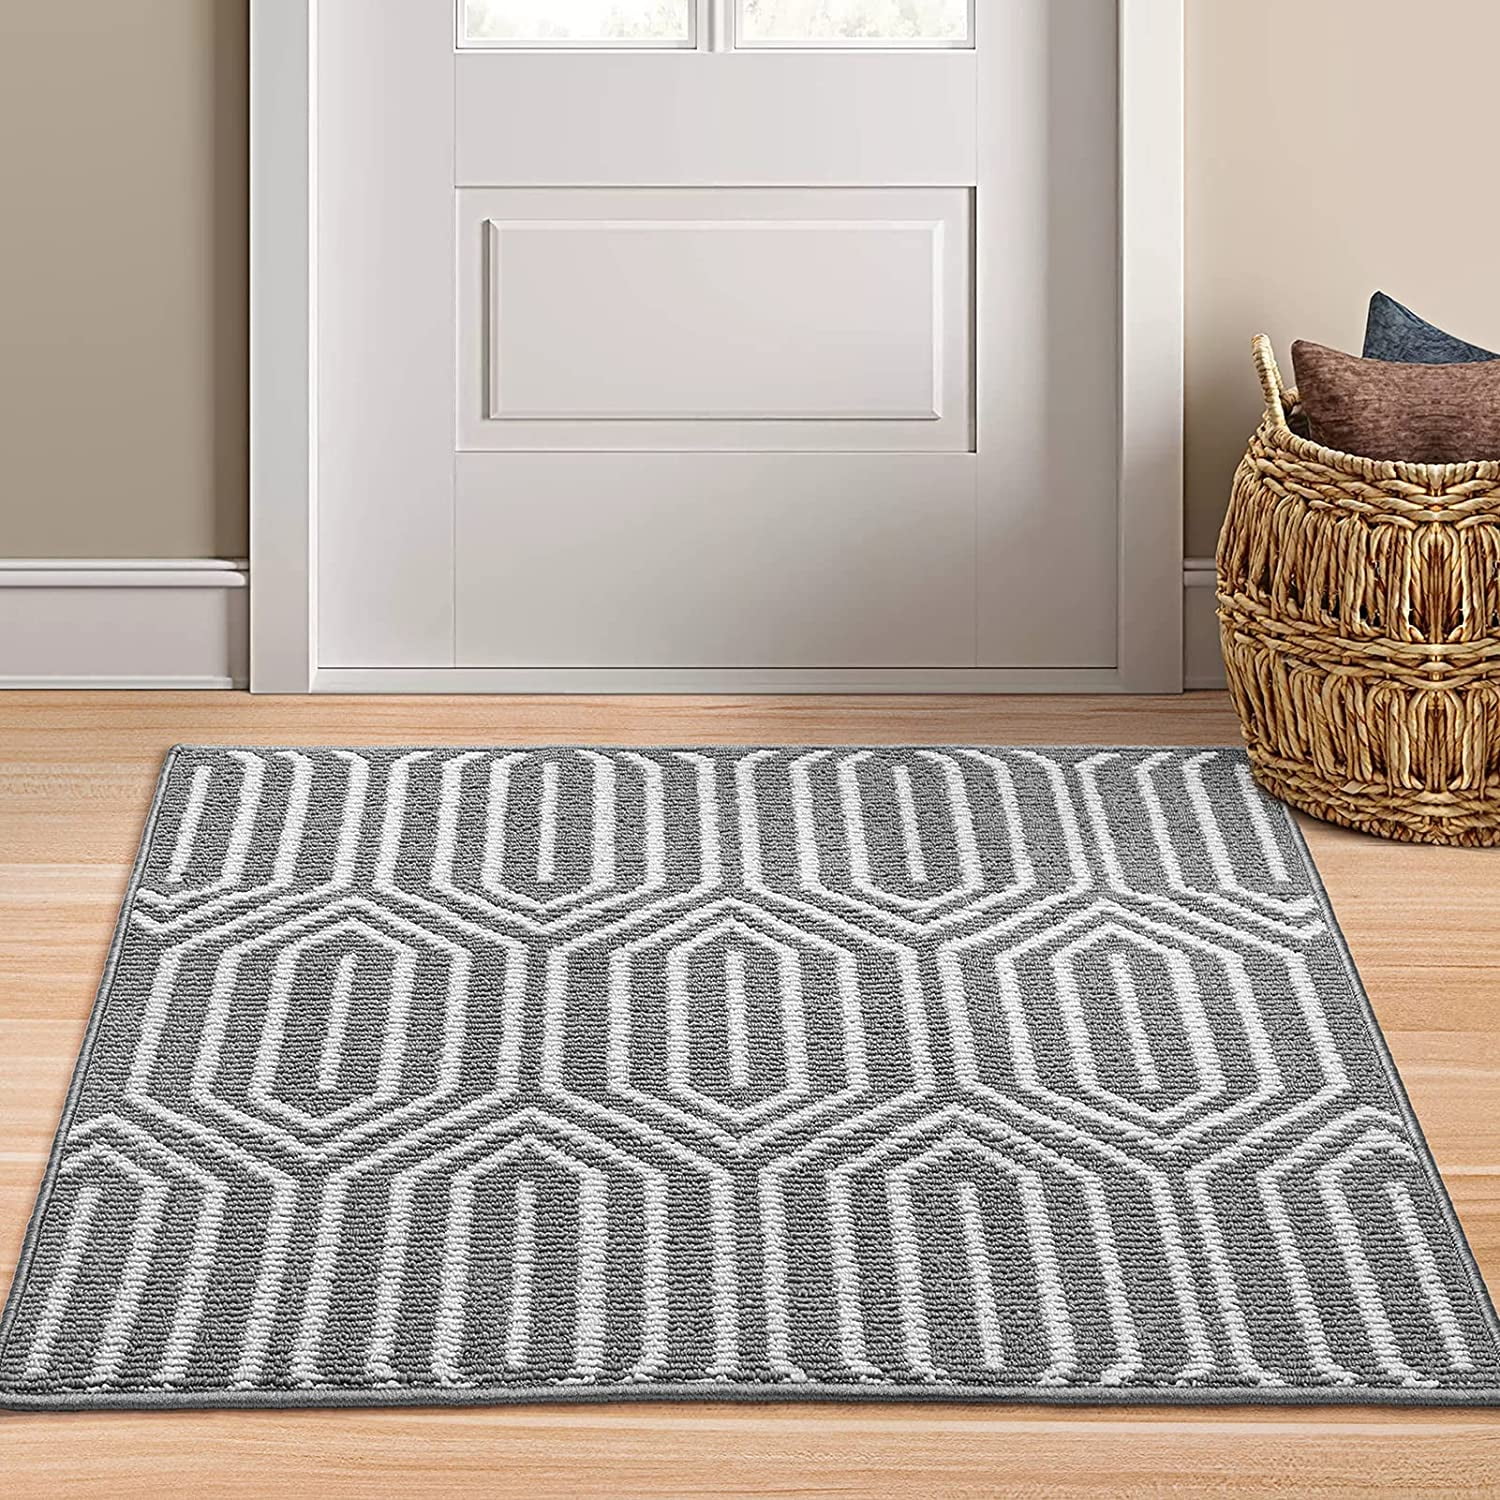 Welcome Doormat Indoor Small Felt Mats Area Floor Mat Carpet Non-slip Bathmat 